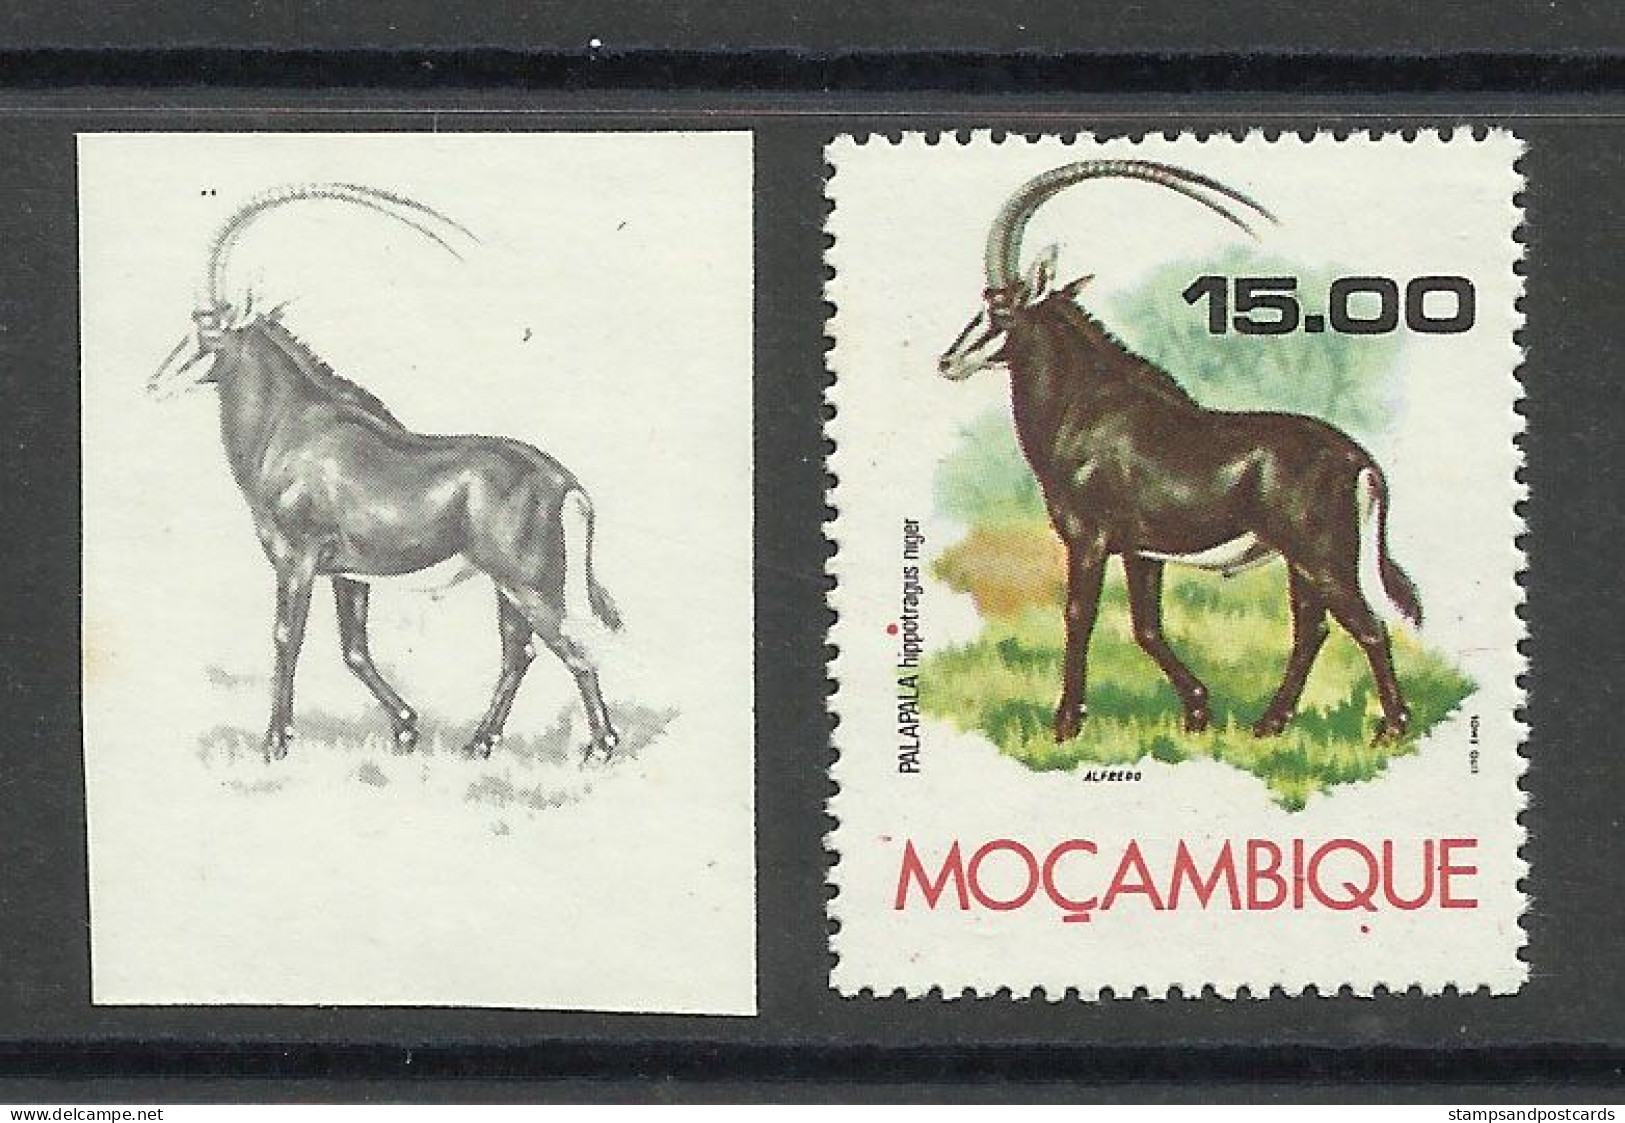 Mozambique 1976 Preuve De Couleur Hippotrague Noir Moçambique 1976 Color Proof Sable Antelope - Rhinocéros